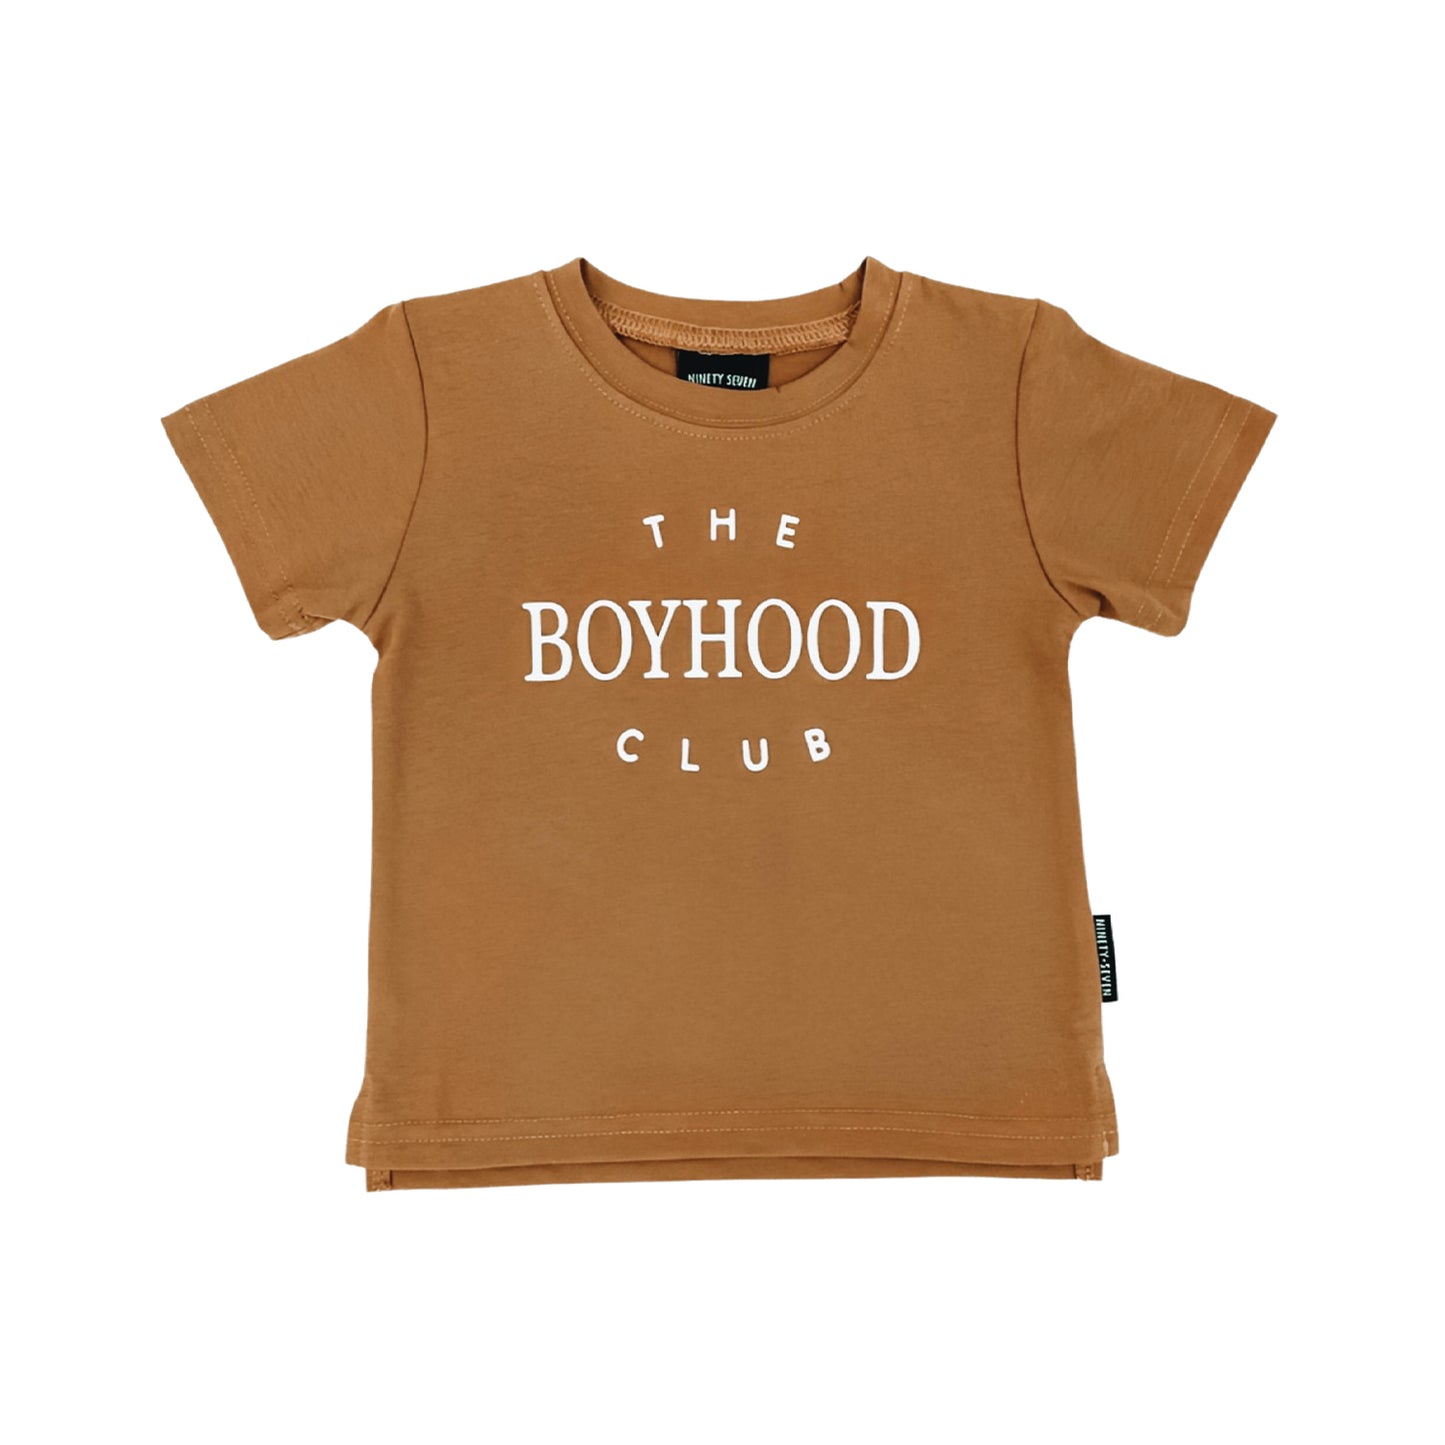 THE BOYHOOD CLUB